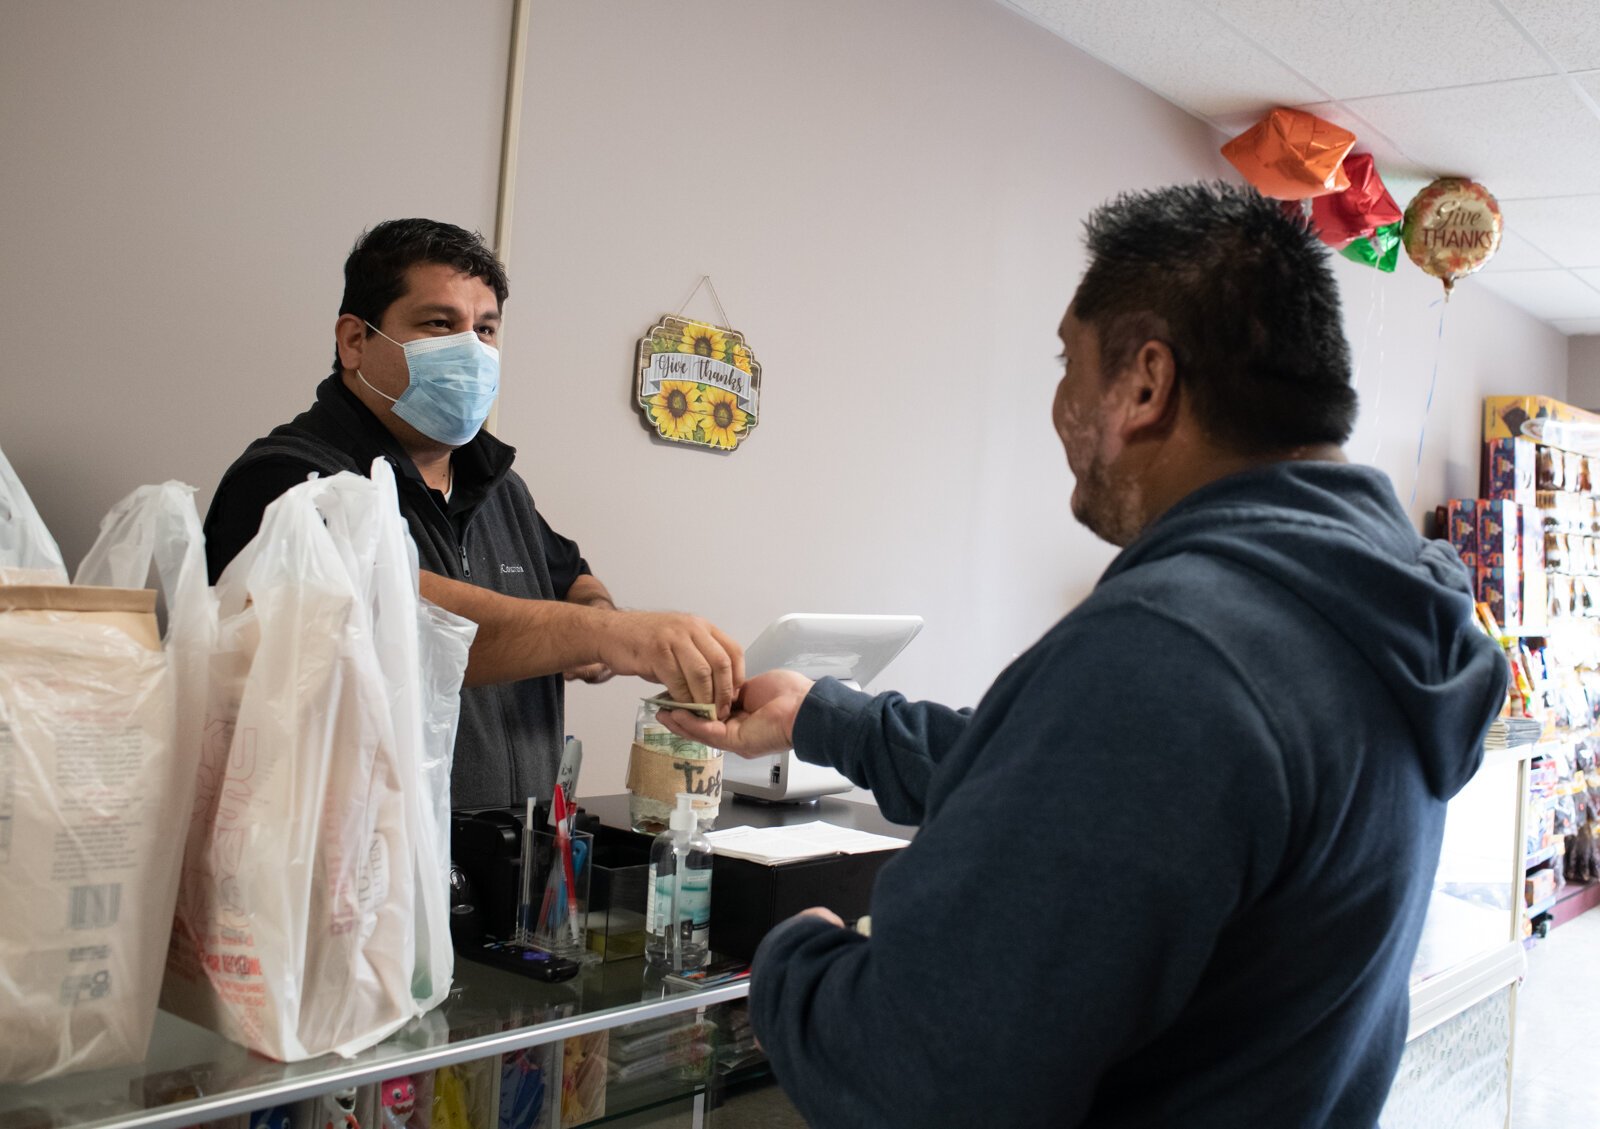 Carlos Peña helps a customer at Zion.